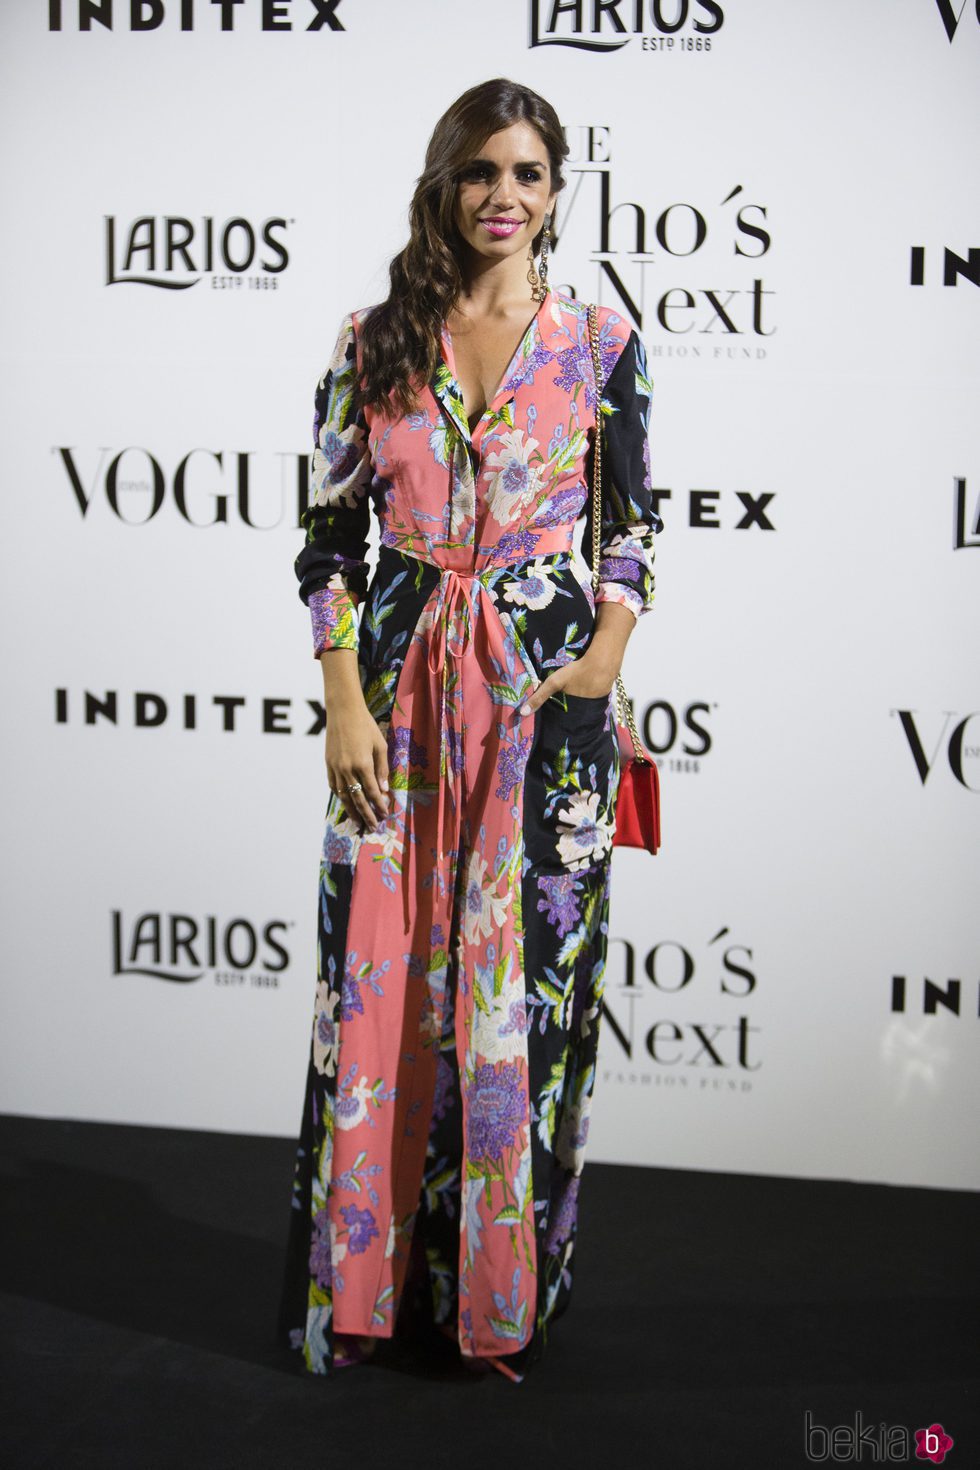 Elena Furiase en la fiesta Vogue Who's on next 2017